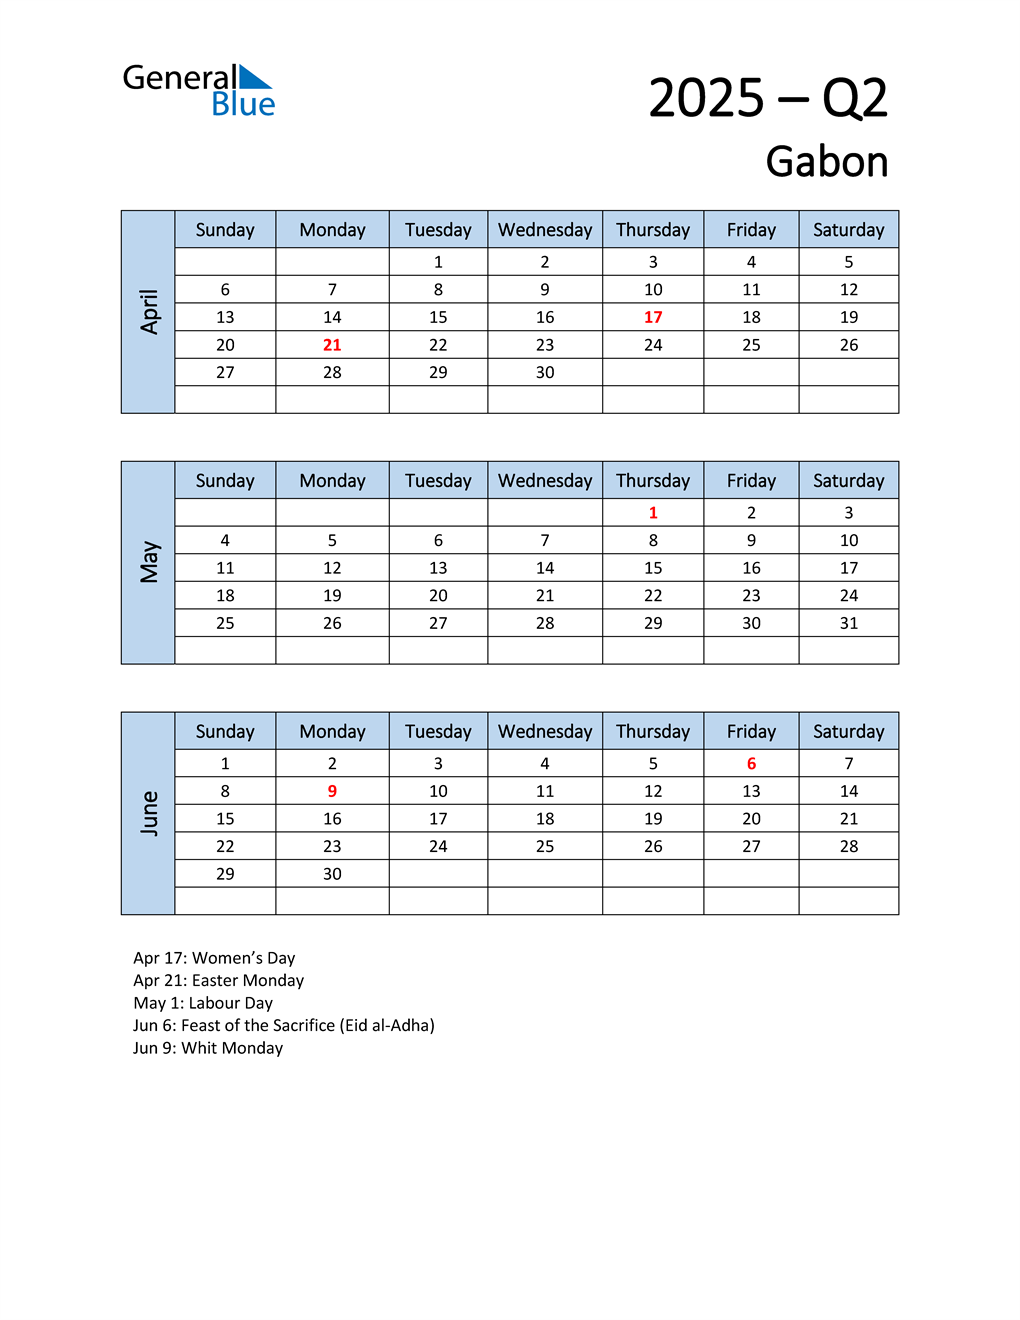  Free Q2 2025 Calendar for Gabon